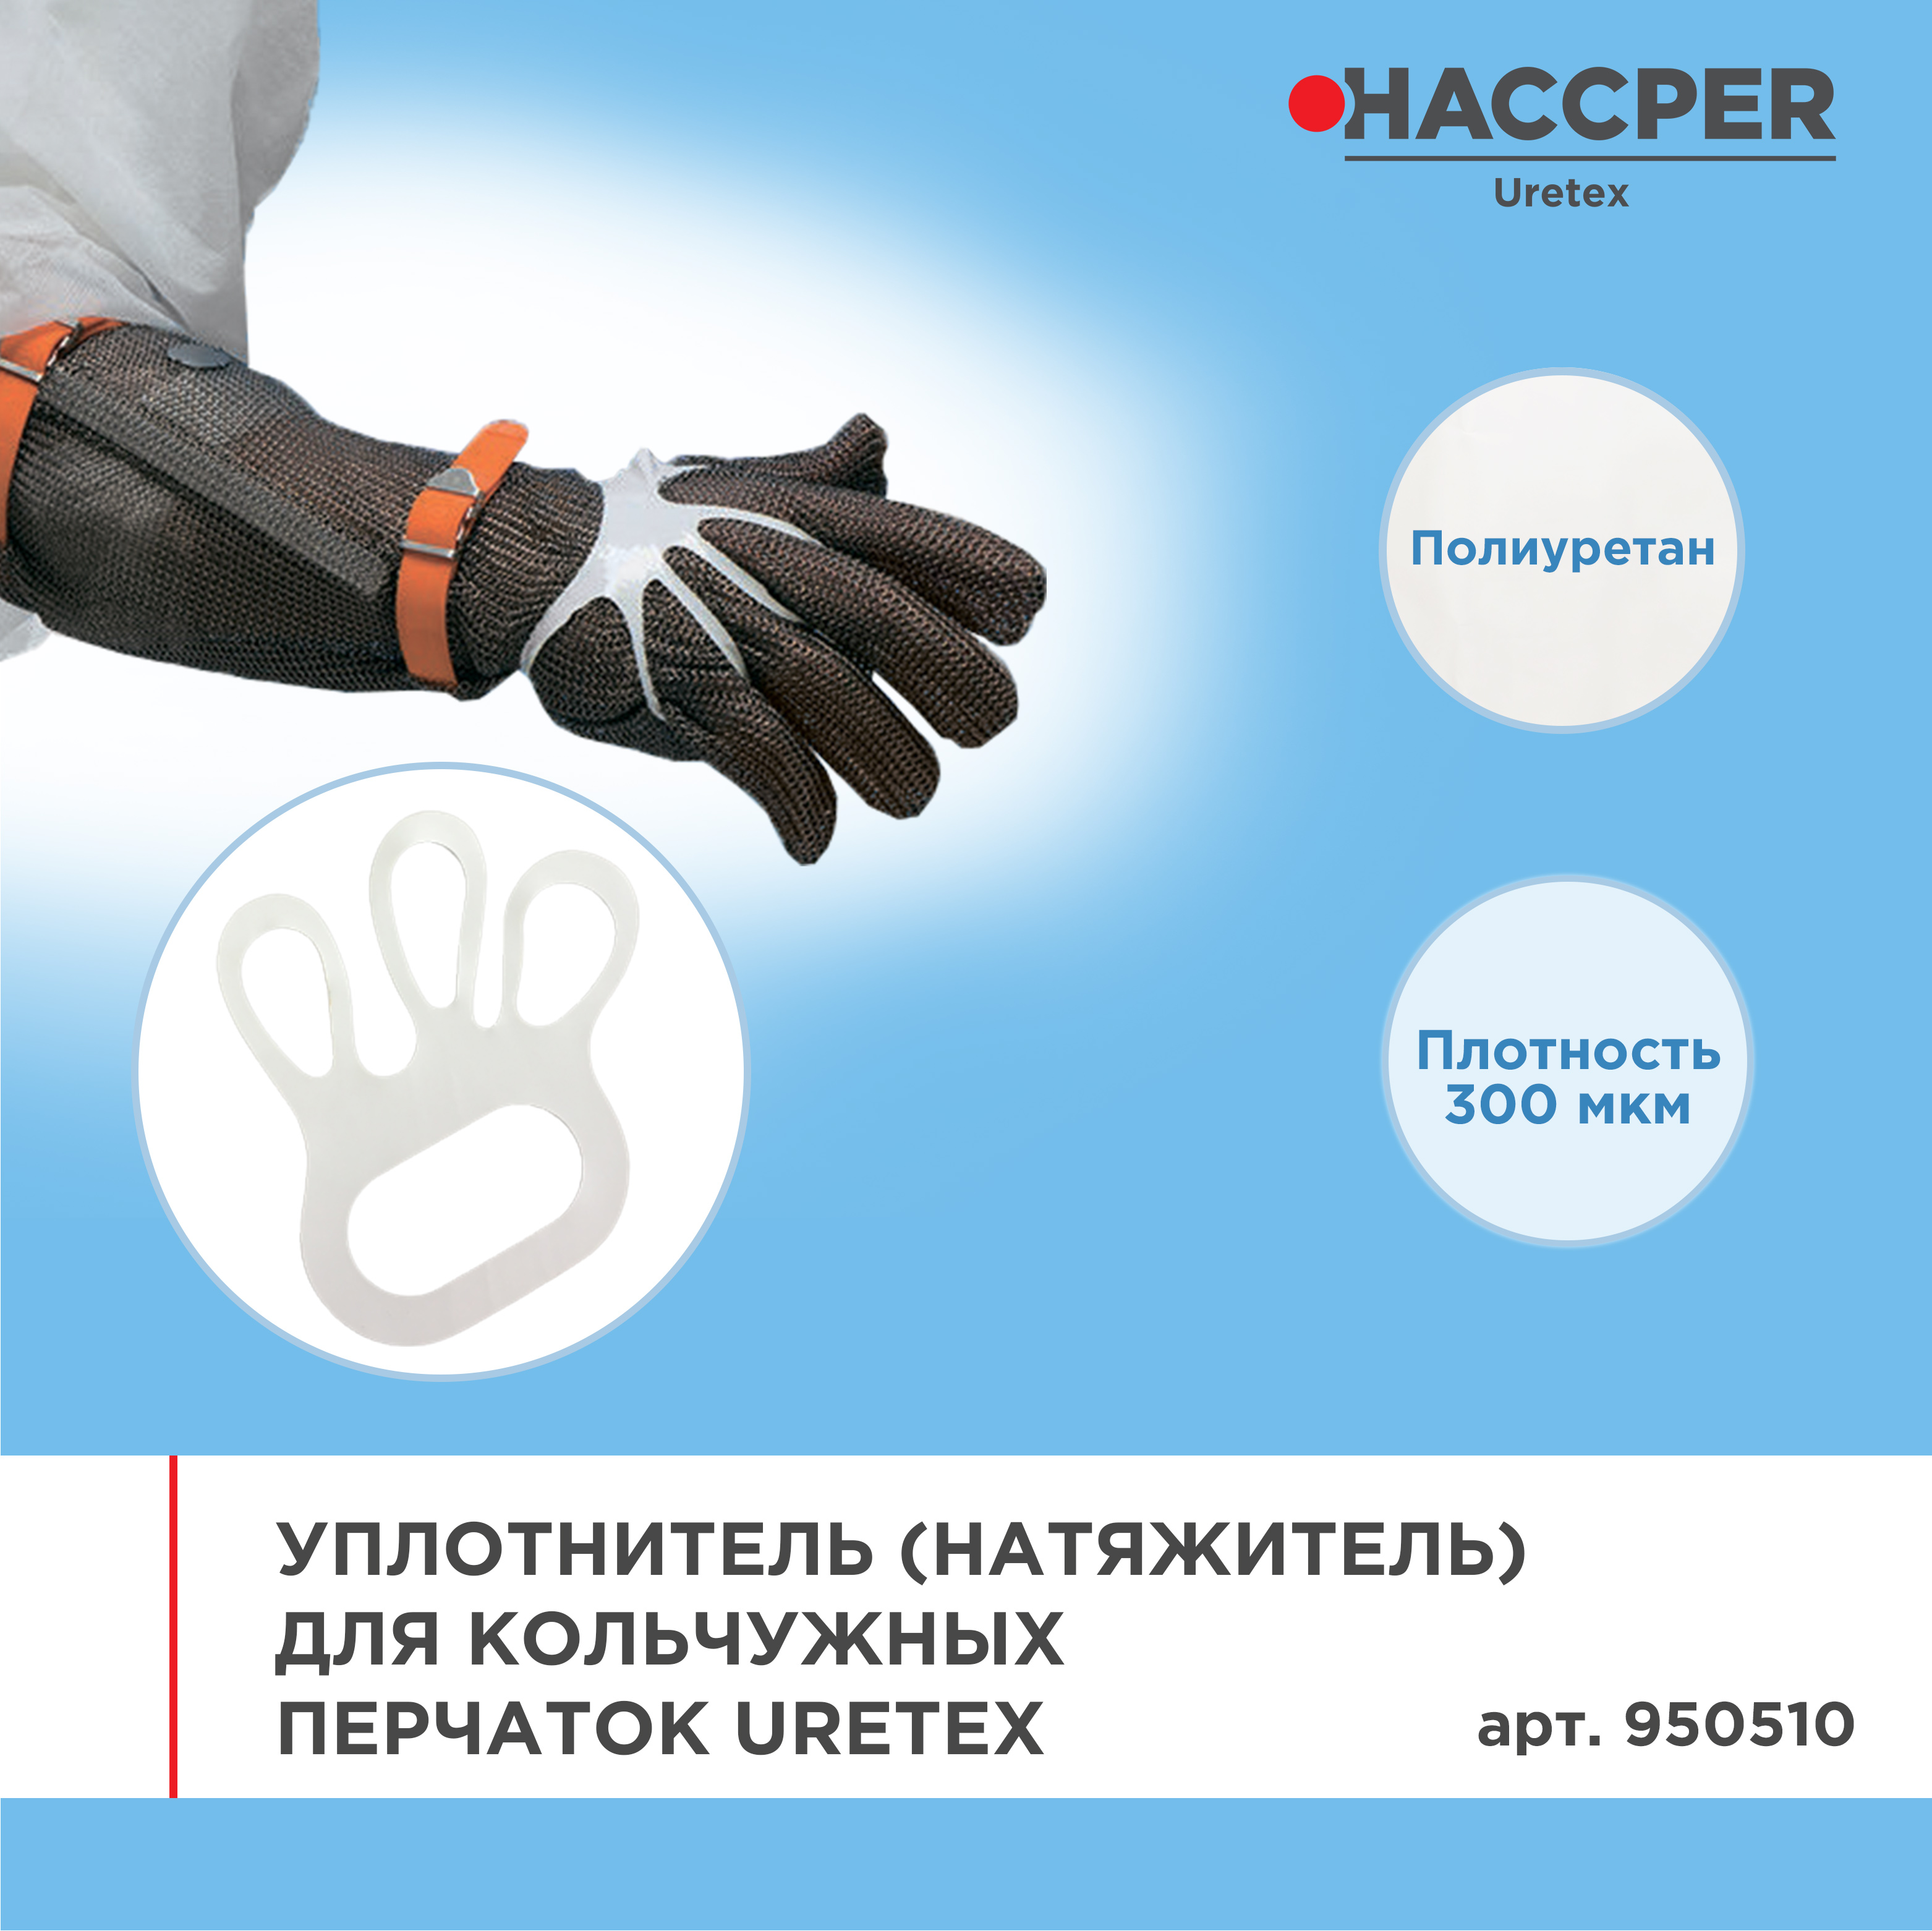 Уплотнитель (натяжитель) для кольчужных перчаток HACCPER Uretex, белый, 300мкм, 100 шт/кор